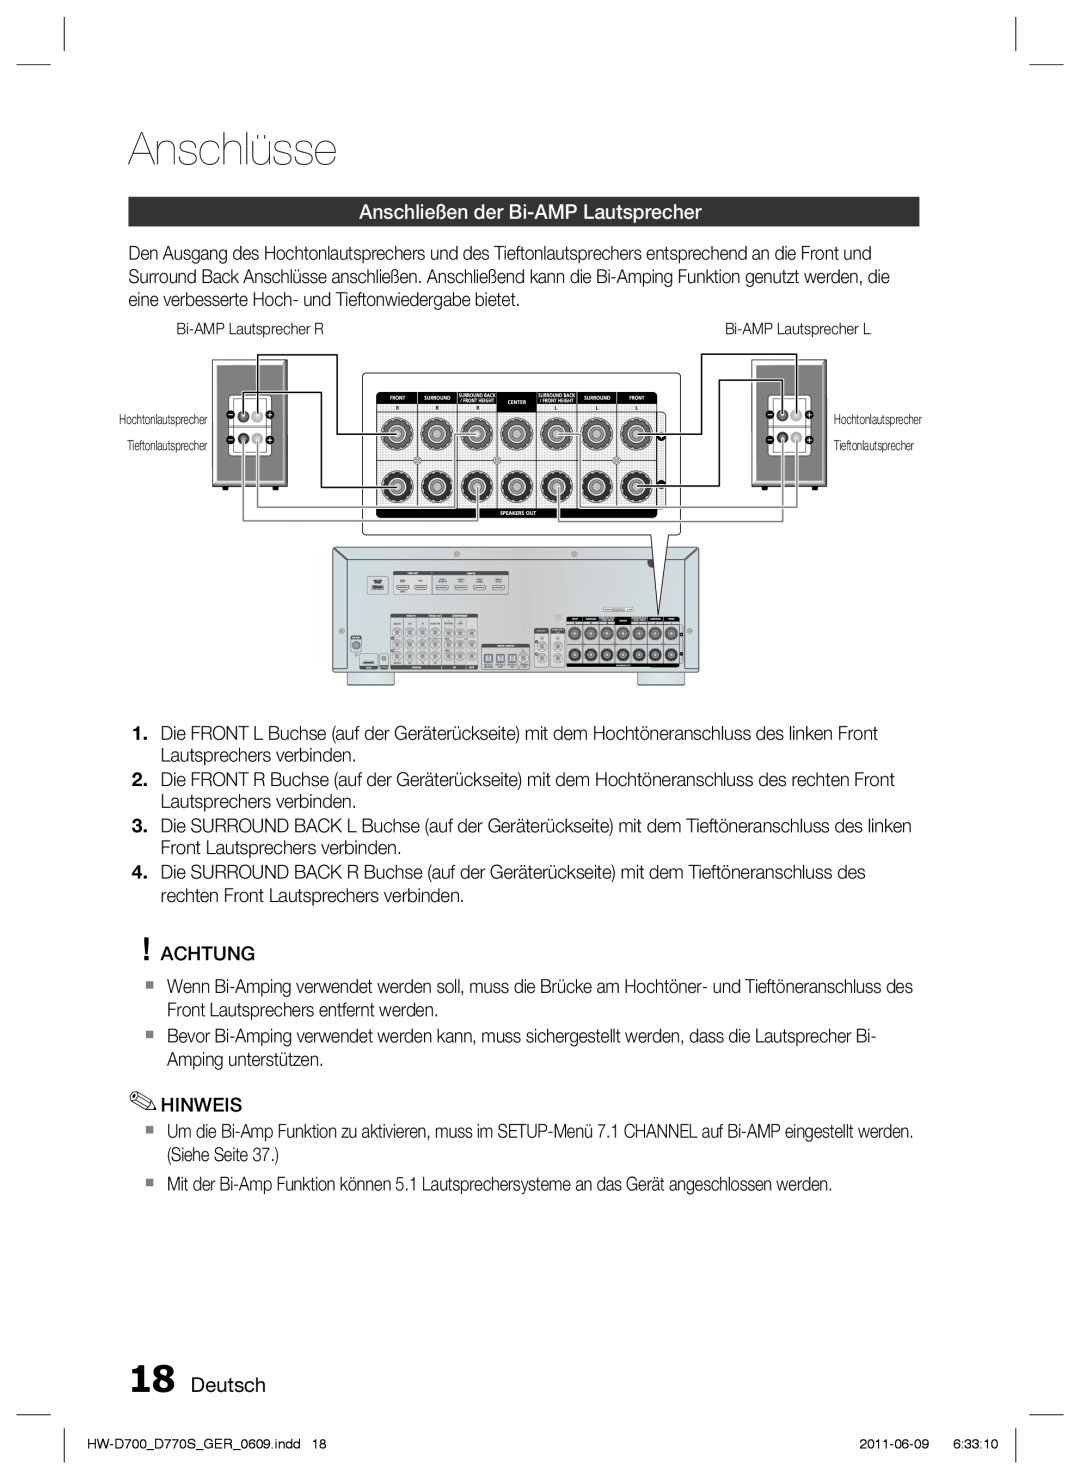 Samsung HW-D770S/EN, HW-D700/EN manual Anschließen der Bi-AMP Lautsprecher, Deutsch, Anschlüsse 